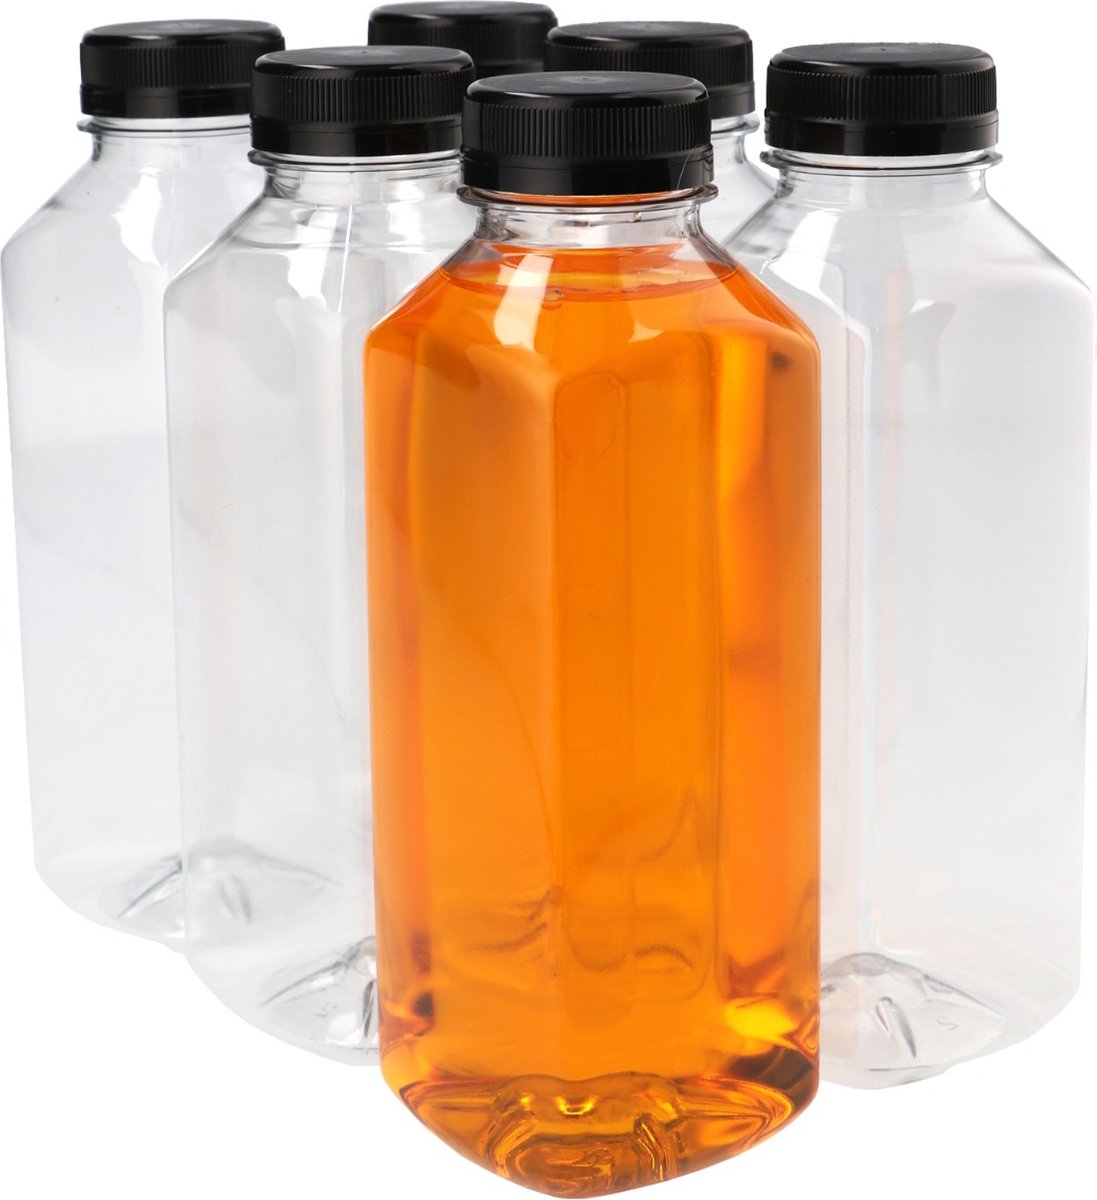 6x Sapfles Plastic 500 ml - Vierkant - PET Flessen met Dop, Sapflessen, Plastic Flesjes Navulbaar, Smoothie Sap Fles - Kunststof BPA-vrij - Rond - Set van 6 Stuks